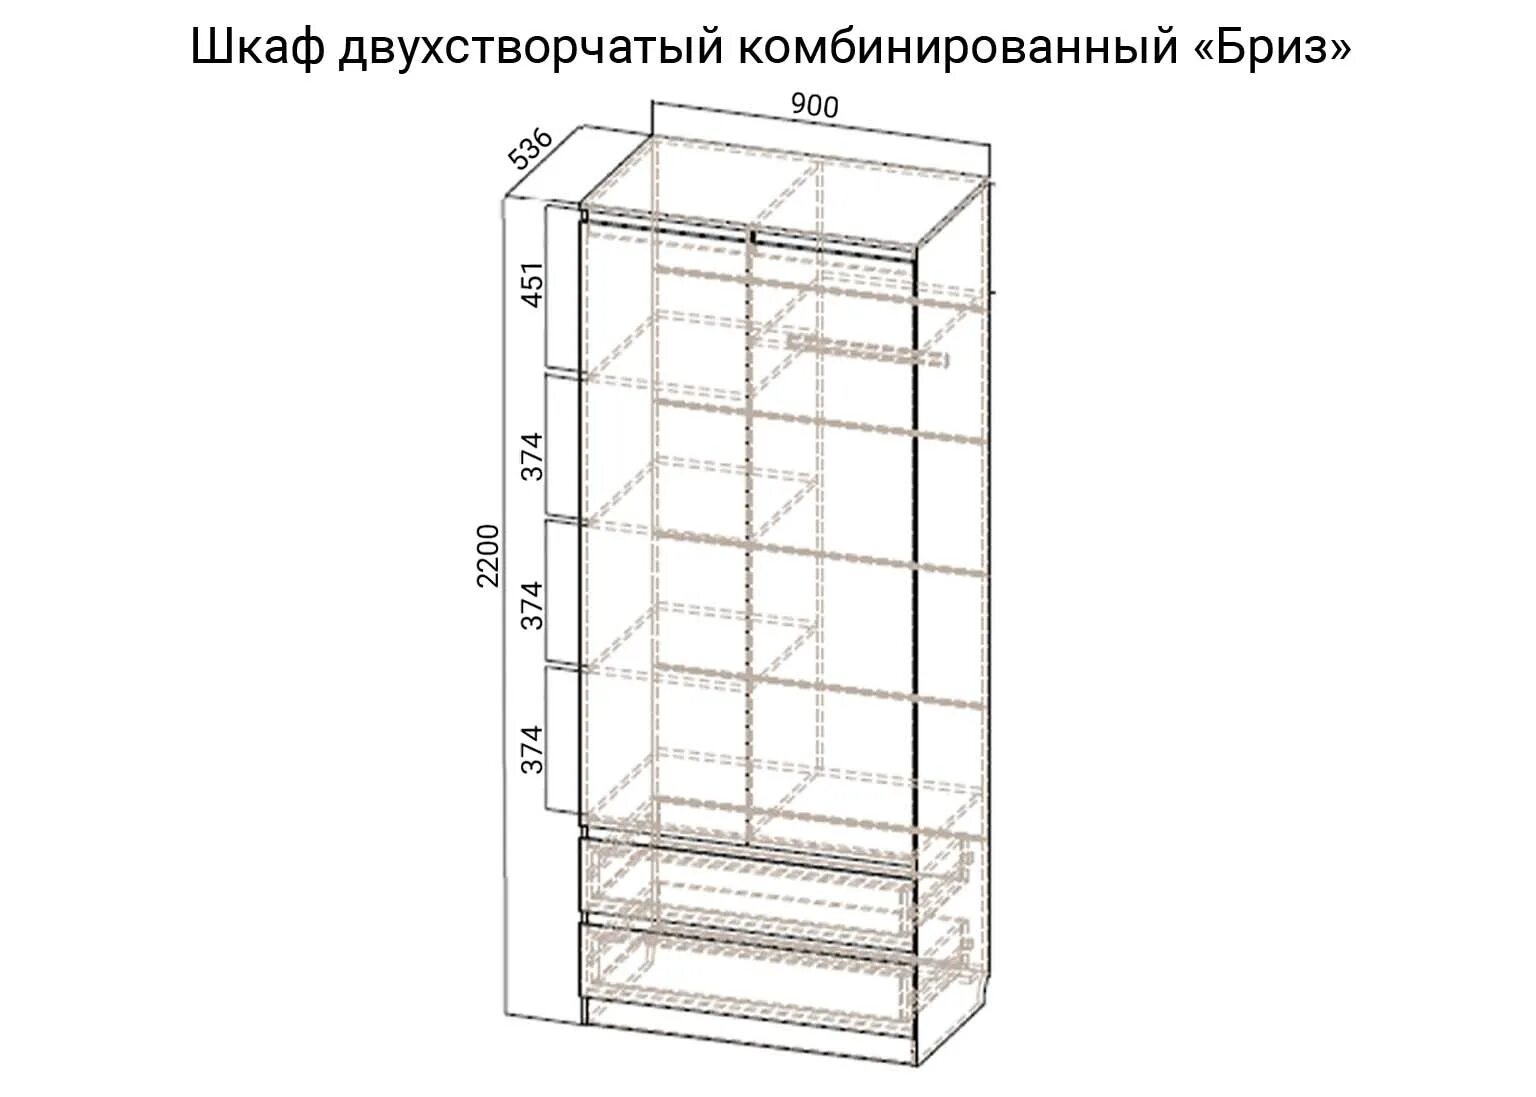 SV мебель шкаф Бриз-1. Шкаф двухстворчатый комбинированный Бриз-1. Шкаф двухстворчатый комбинированный SV мебель Бриз. Шкаф двухстворчатый бриз1 св ме. Двухстворчатый шкаф размеры